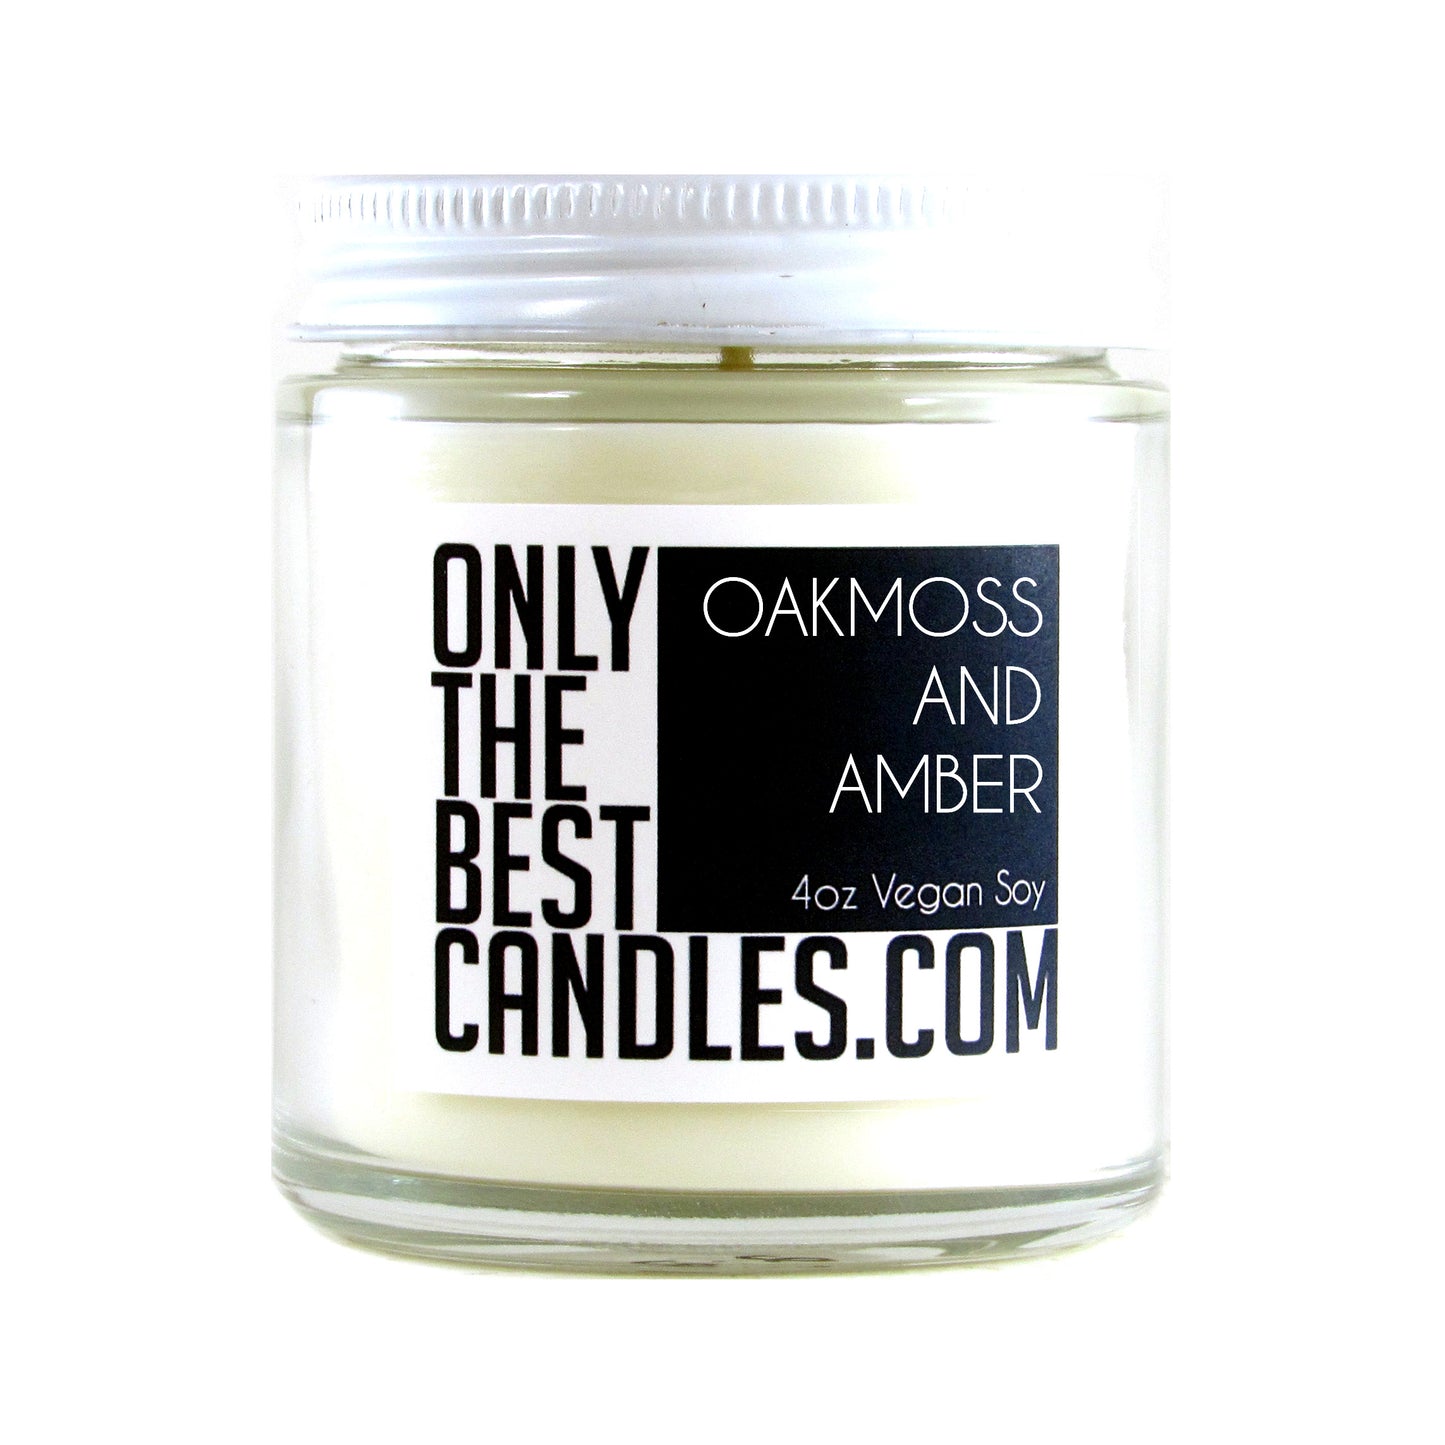 Oakmoss and Amber 4oz Candle